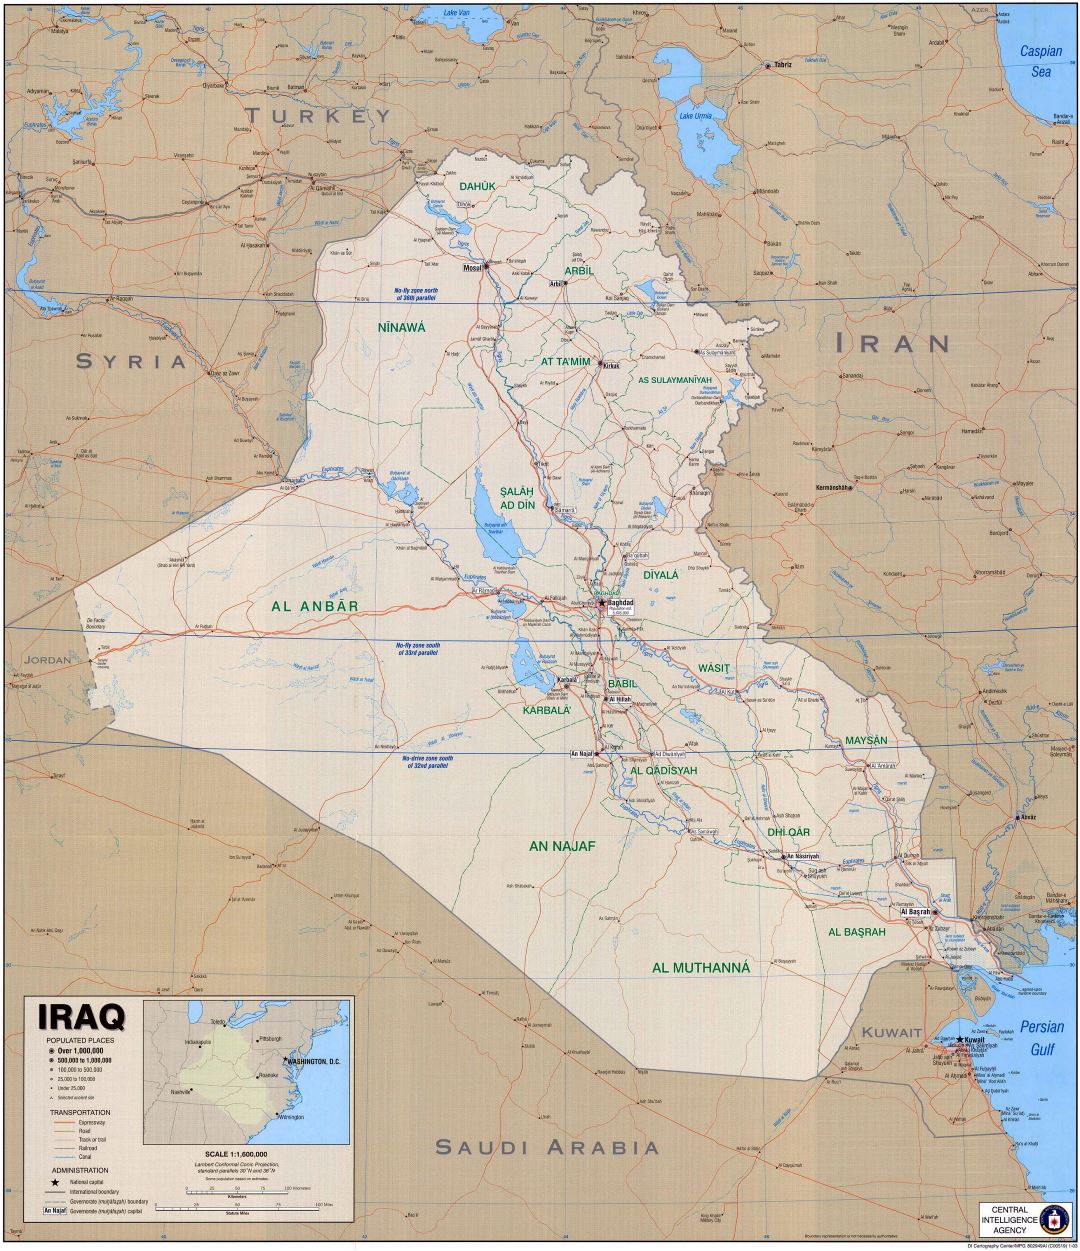 Grande detallado mapa político de Irak con carreteras, vías rápidas, ciudades y otras marcas - 2003